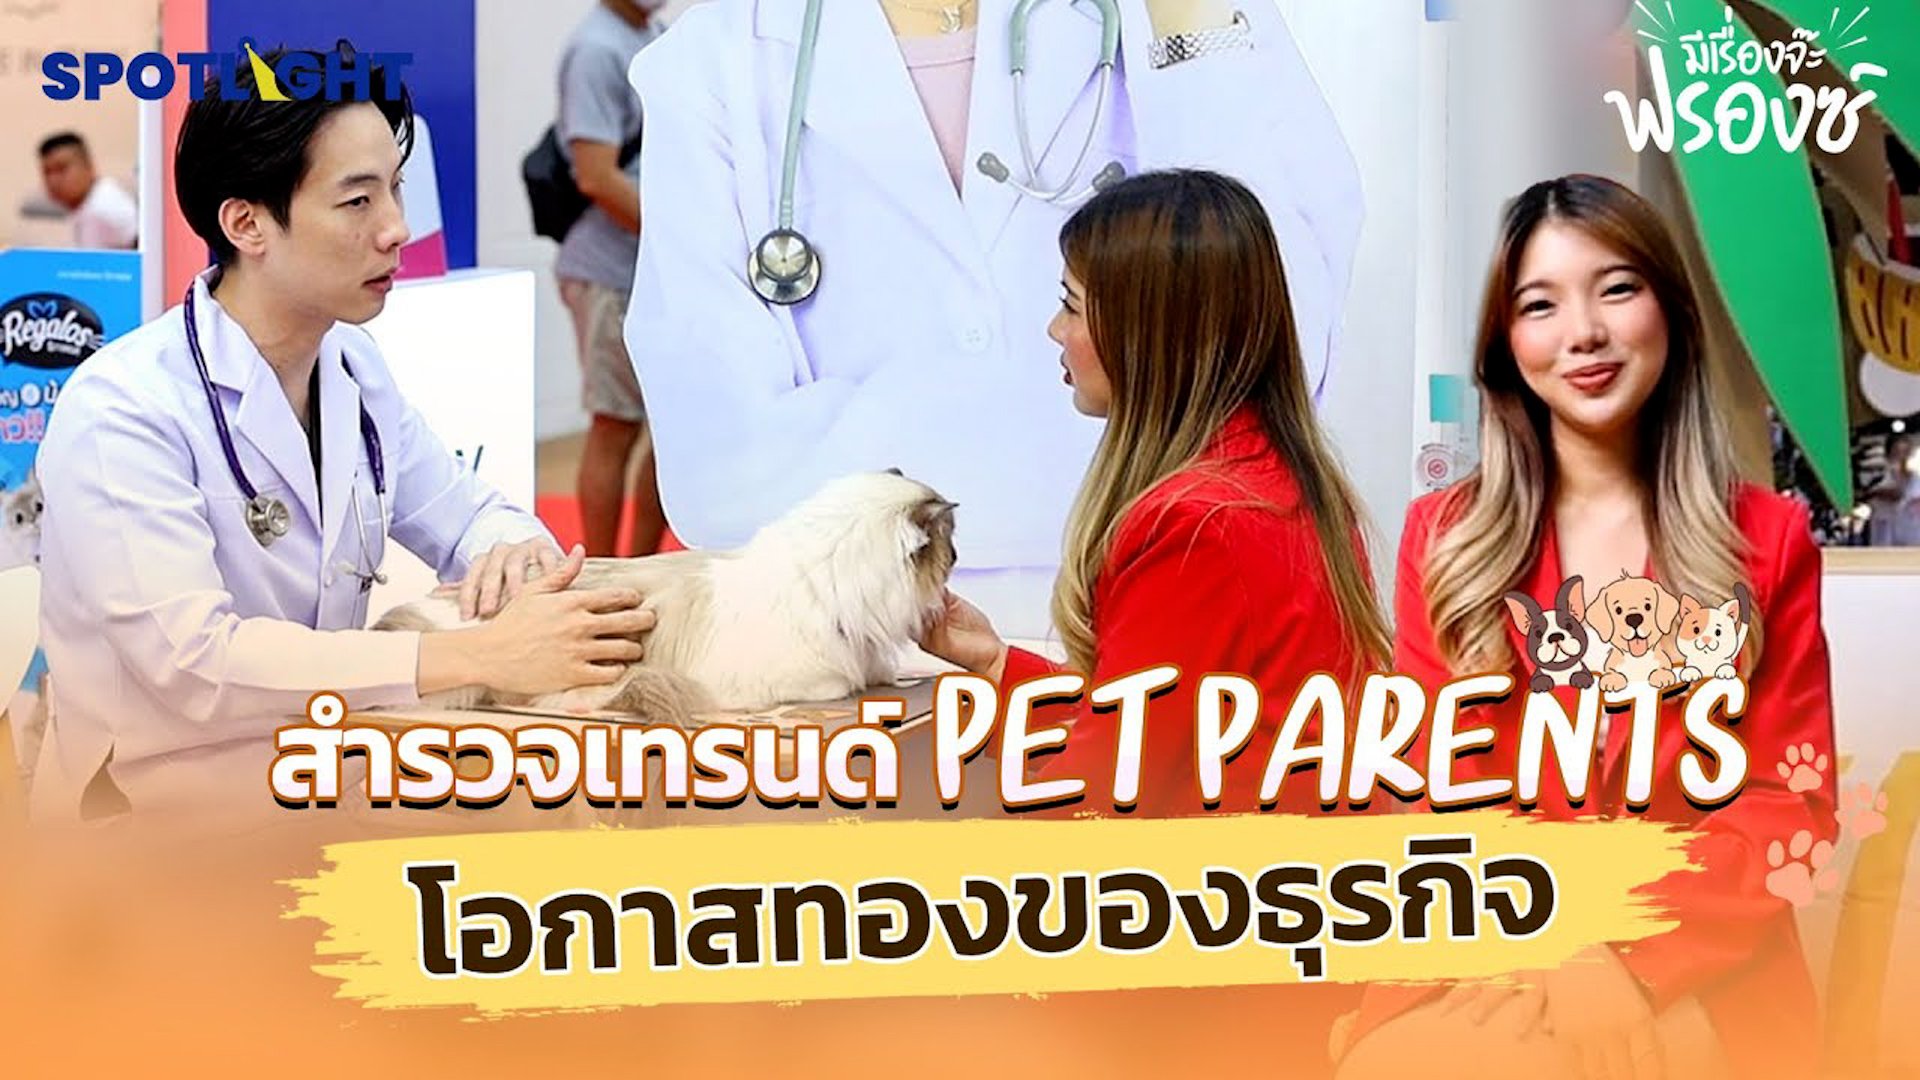 สำรวจเทรนด์ Pet Parents โอกาสทองของธุรกิจ | Spotlight | 9 พ.ค. 67 | AMARIN TVHD34